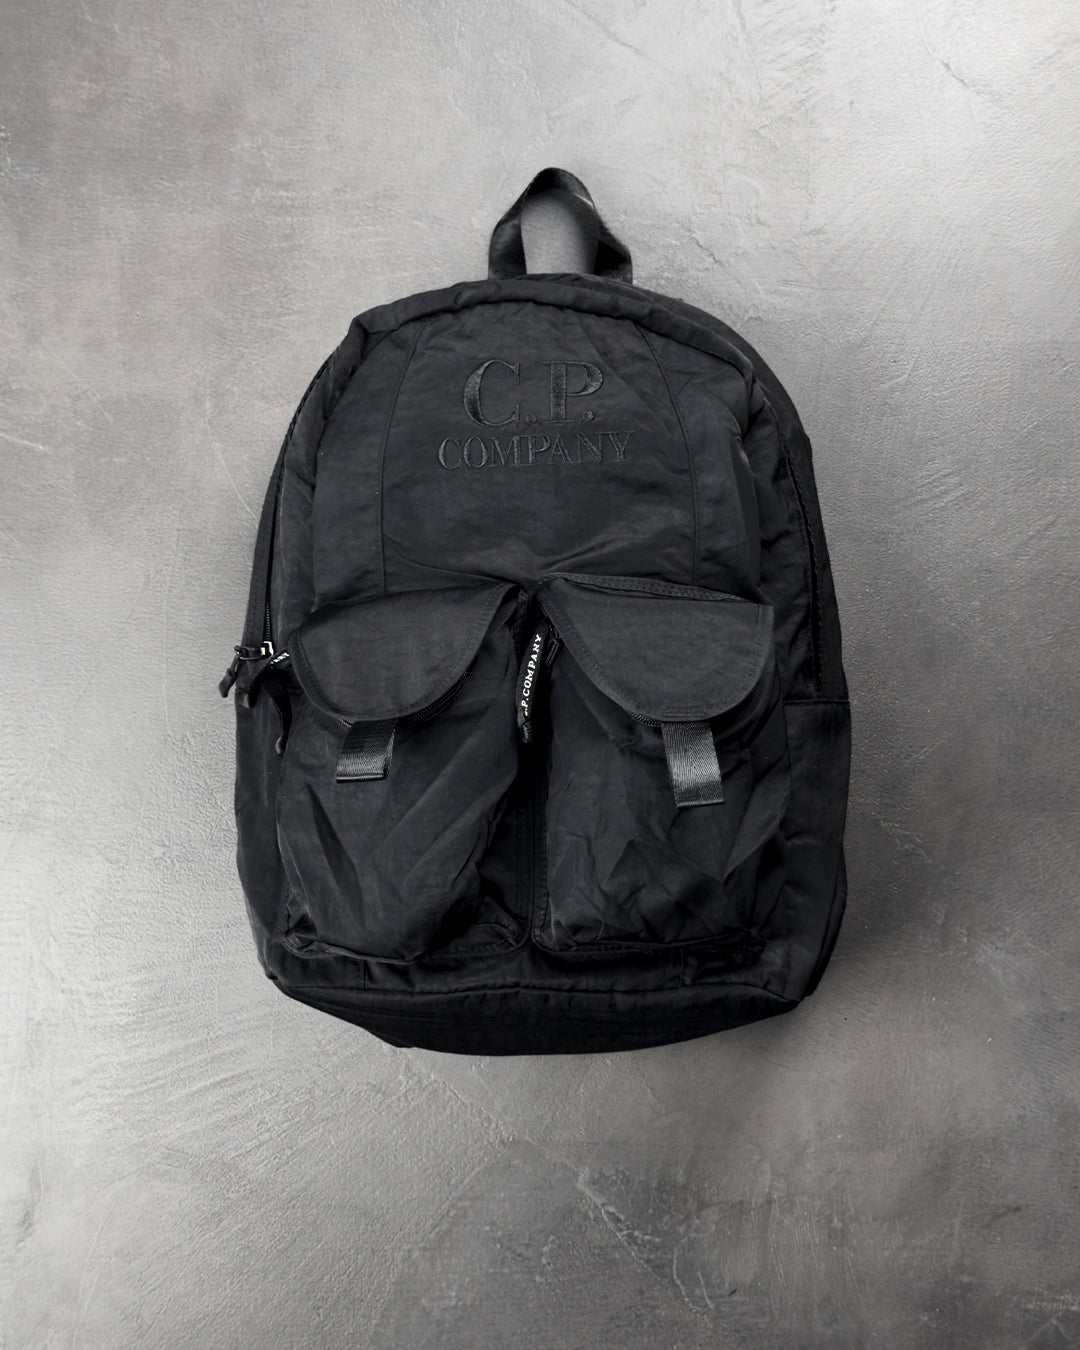 C.P. COMPANY Taylon P Mixed Backpack Black